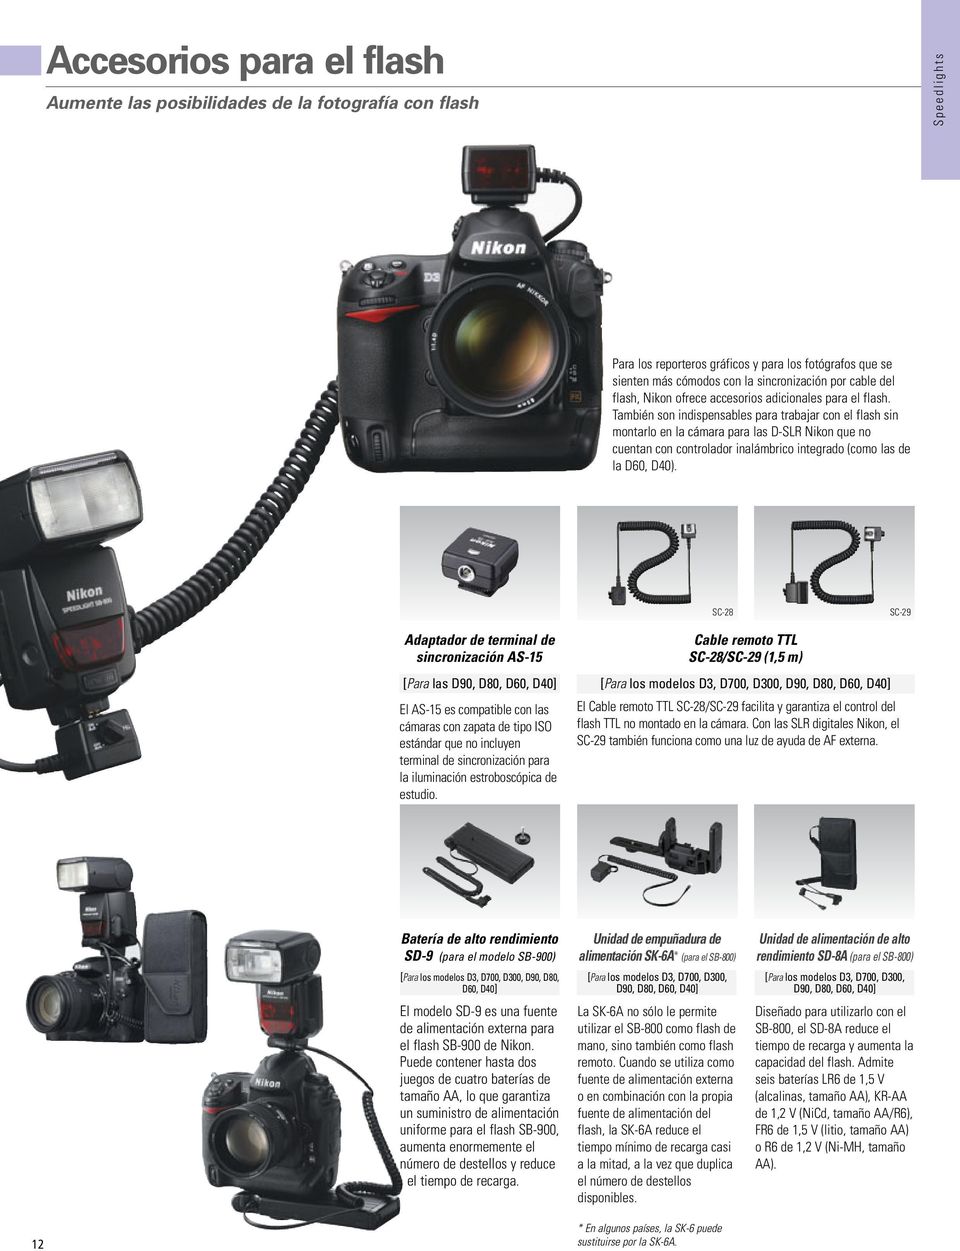 También son indispensables para trabajar con el flash sin montarlo en la cámara para las D-SLR Nikon que no cuentan con controlador inalámbrico integrado (como las de la D60, D40).